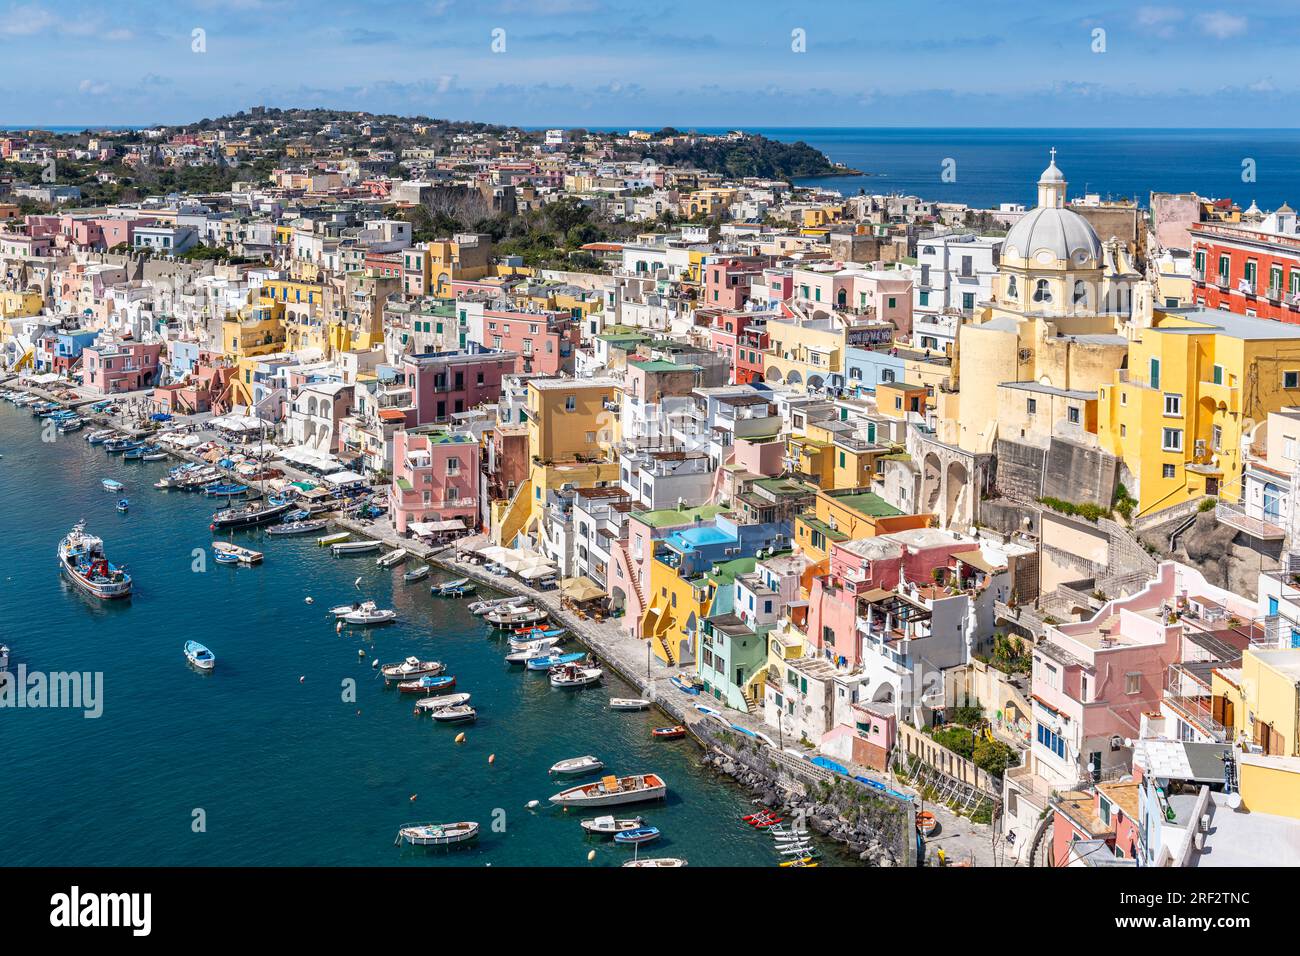 Il bellissimo porto di Corricella a Procida, famoso per le sue vivaci case colorate, la regione Campania, l'Italia Foto Stock